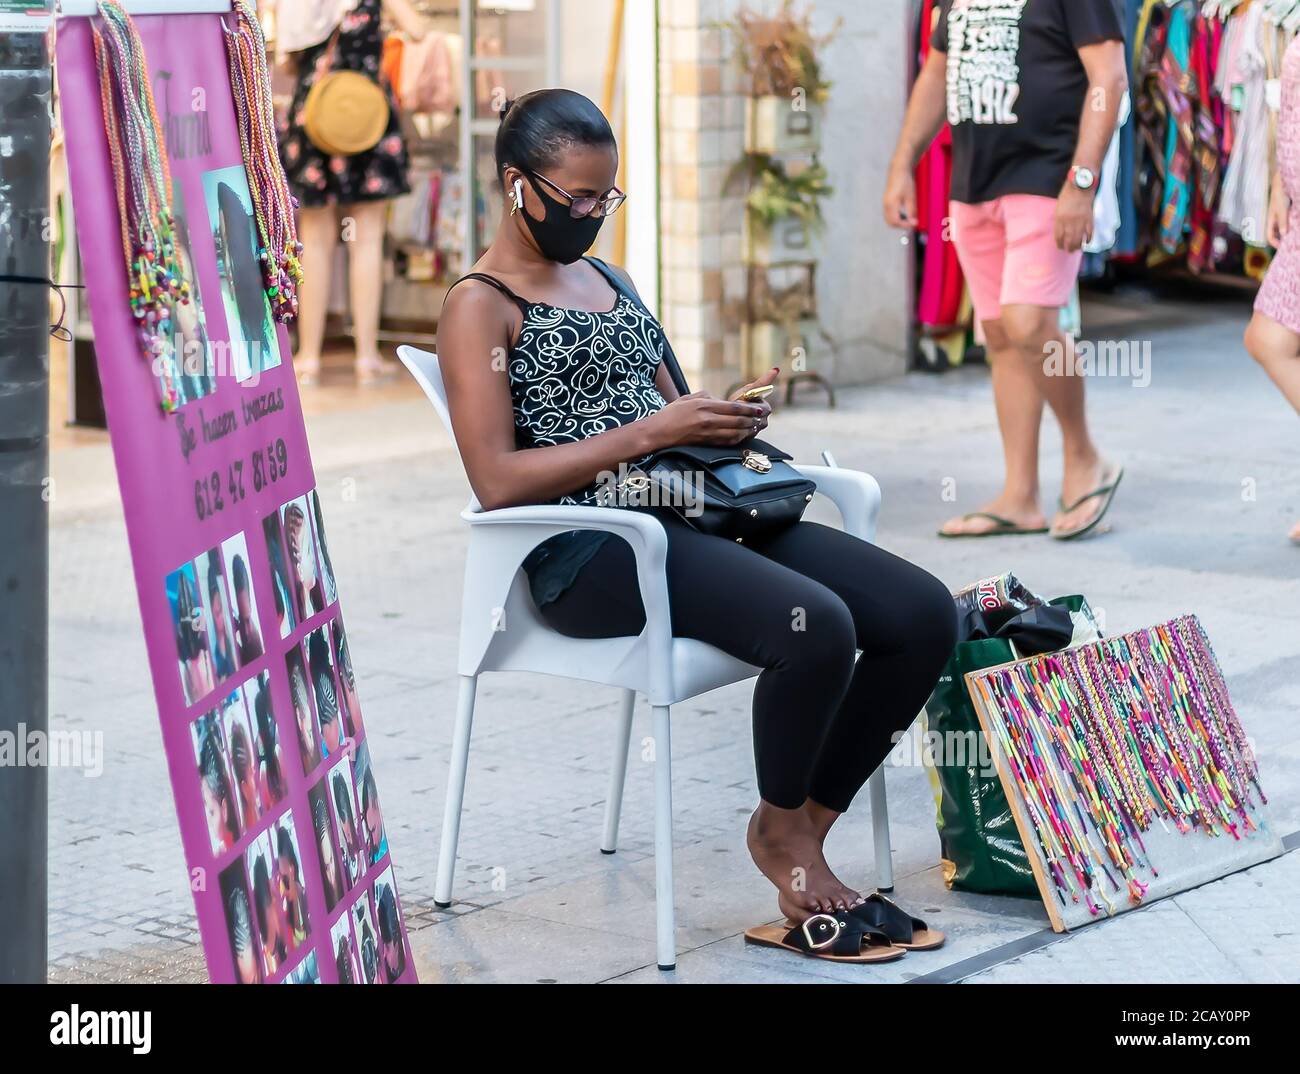 Punta Umbria, Huelva, Spagna - 7 agosto 2020: Una donna migrante africano strada laterale parrucchiere. Qui il parrucchiere è in attesa di creare trecce in h. Foto Stock